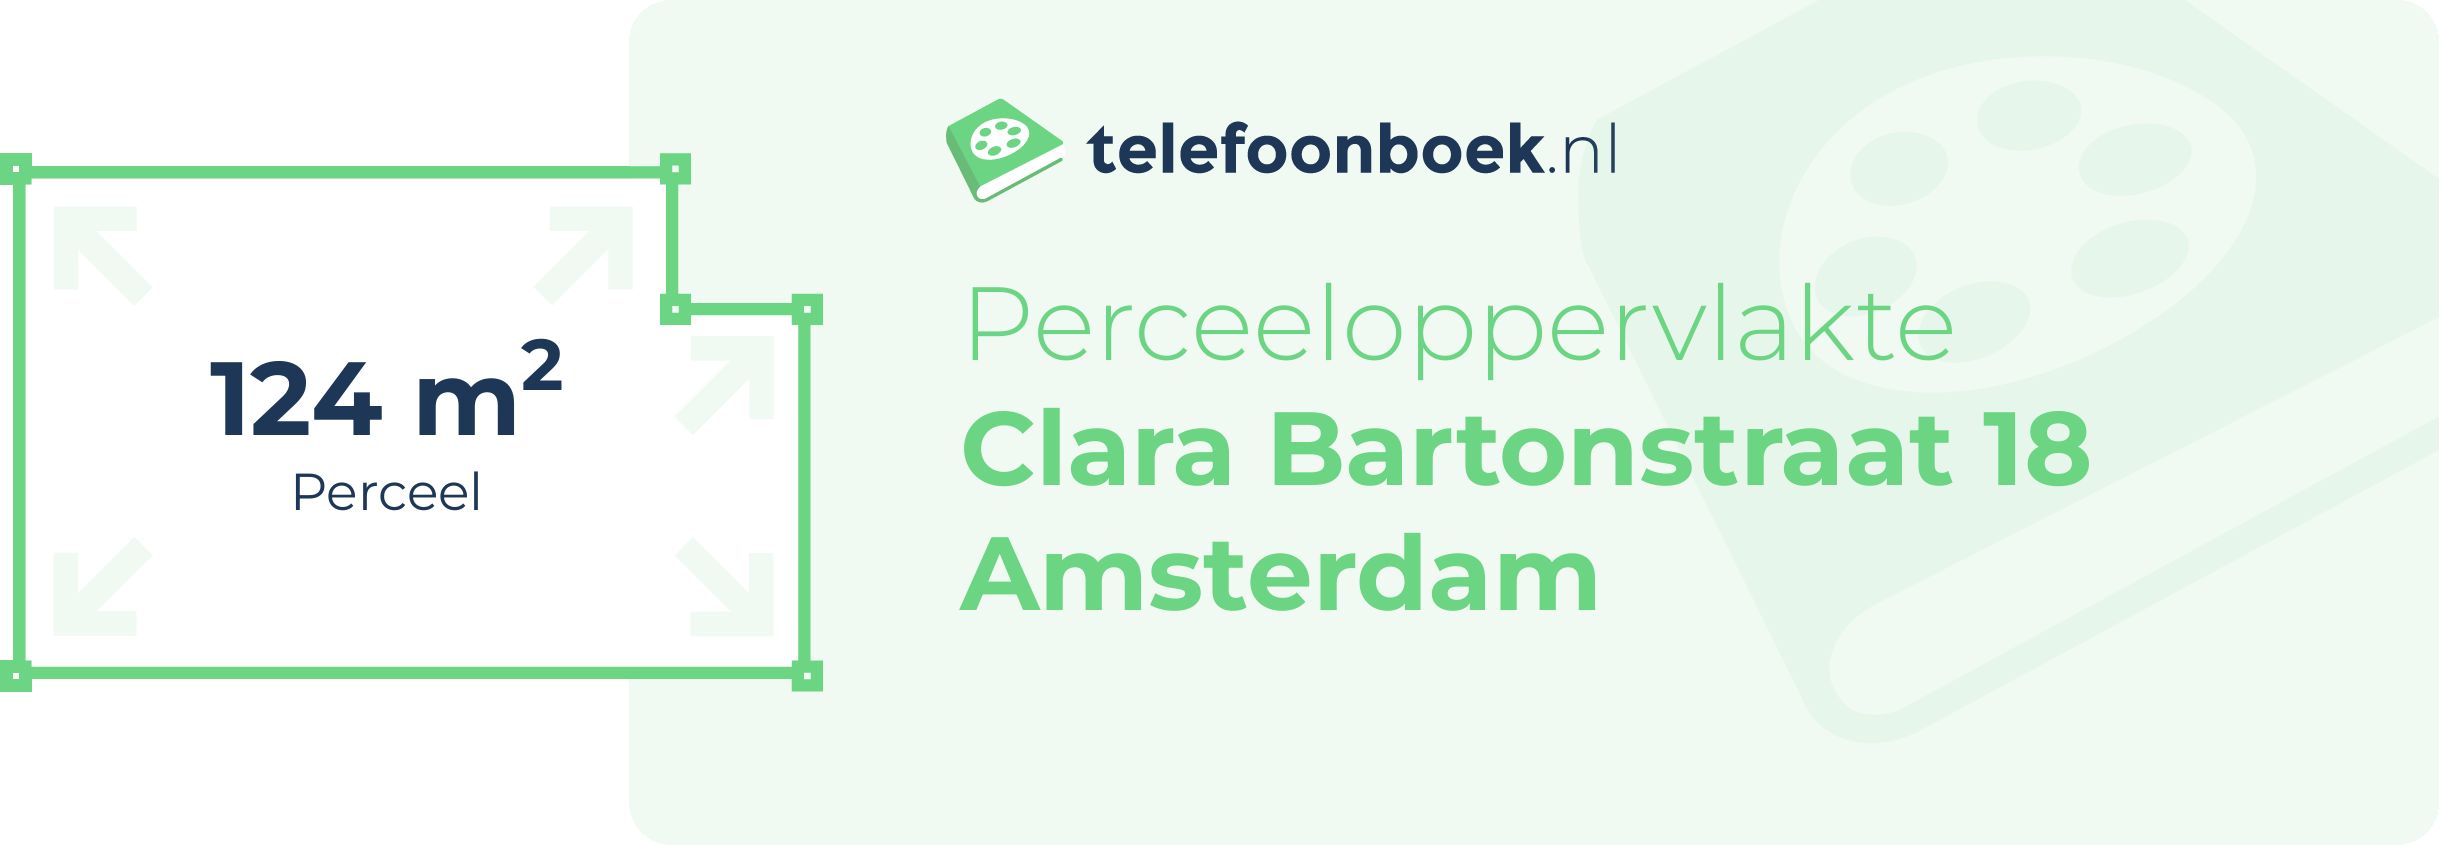 Perceeloppervlakte Clara Bartonstraat 18 Amsterdam